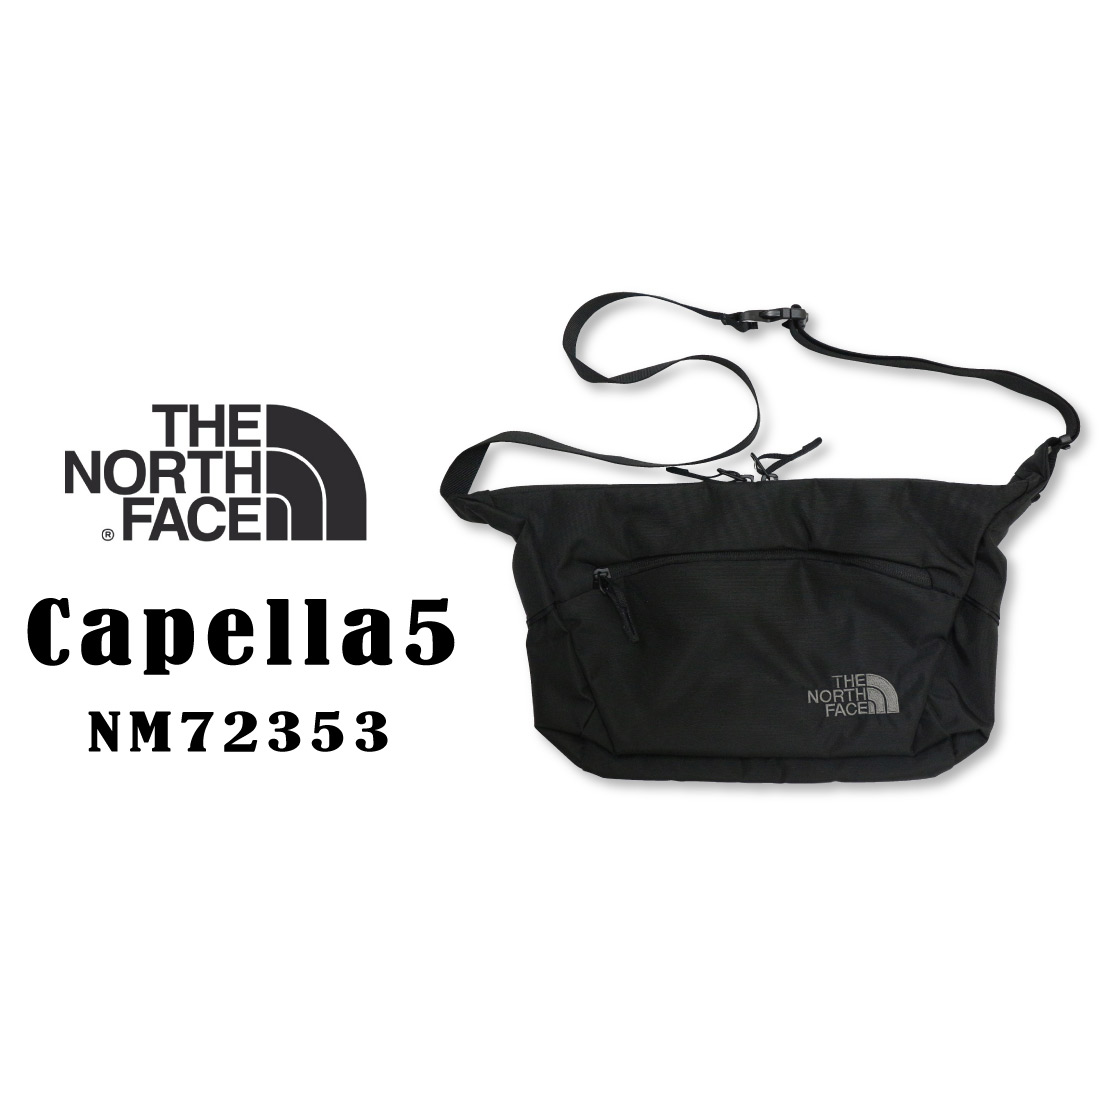 THE NORTH FACE ザ ノースフェイス Capella 5 カペラ5 NM72353 ショルダーバッグ 国内正規販売店 アウトドア 5L容量  K ブラック